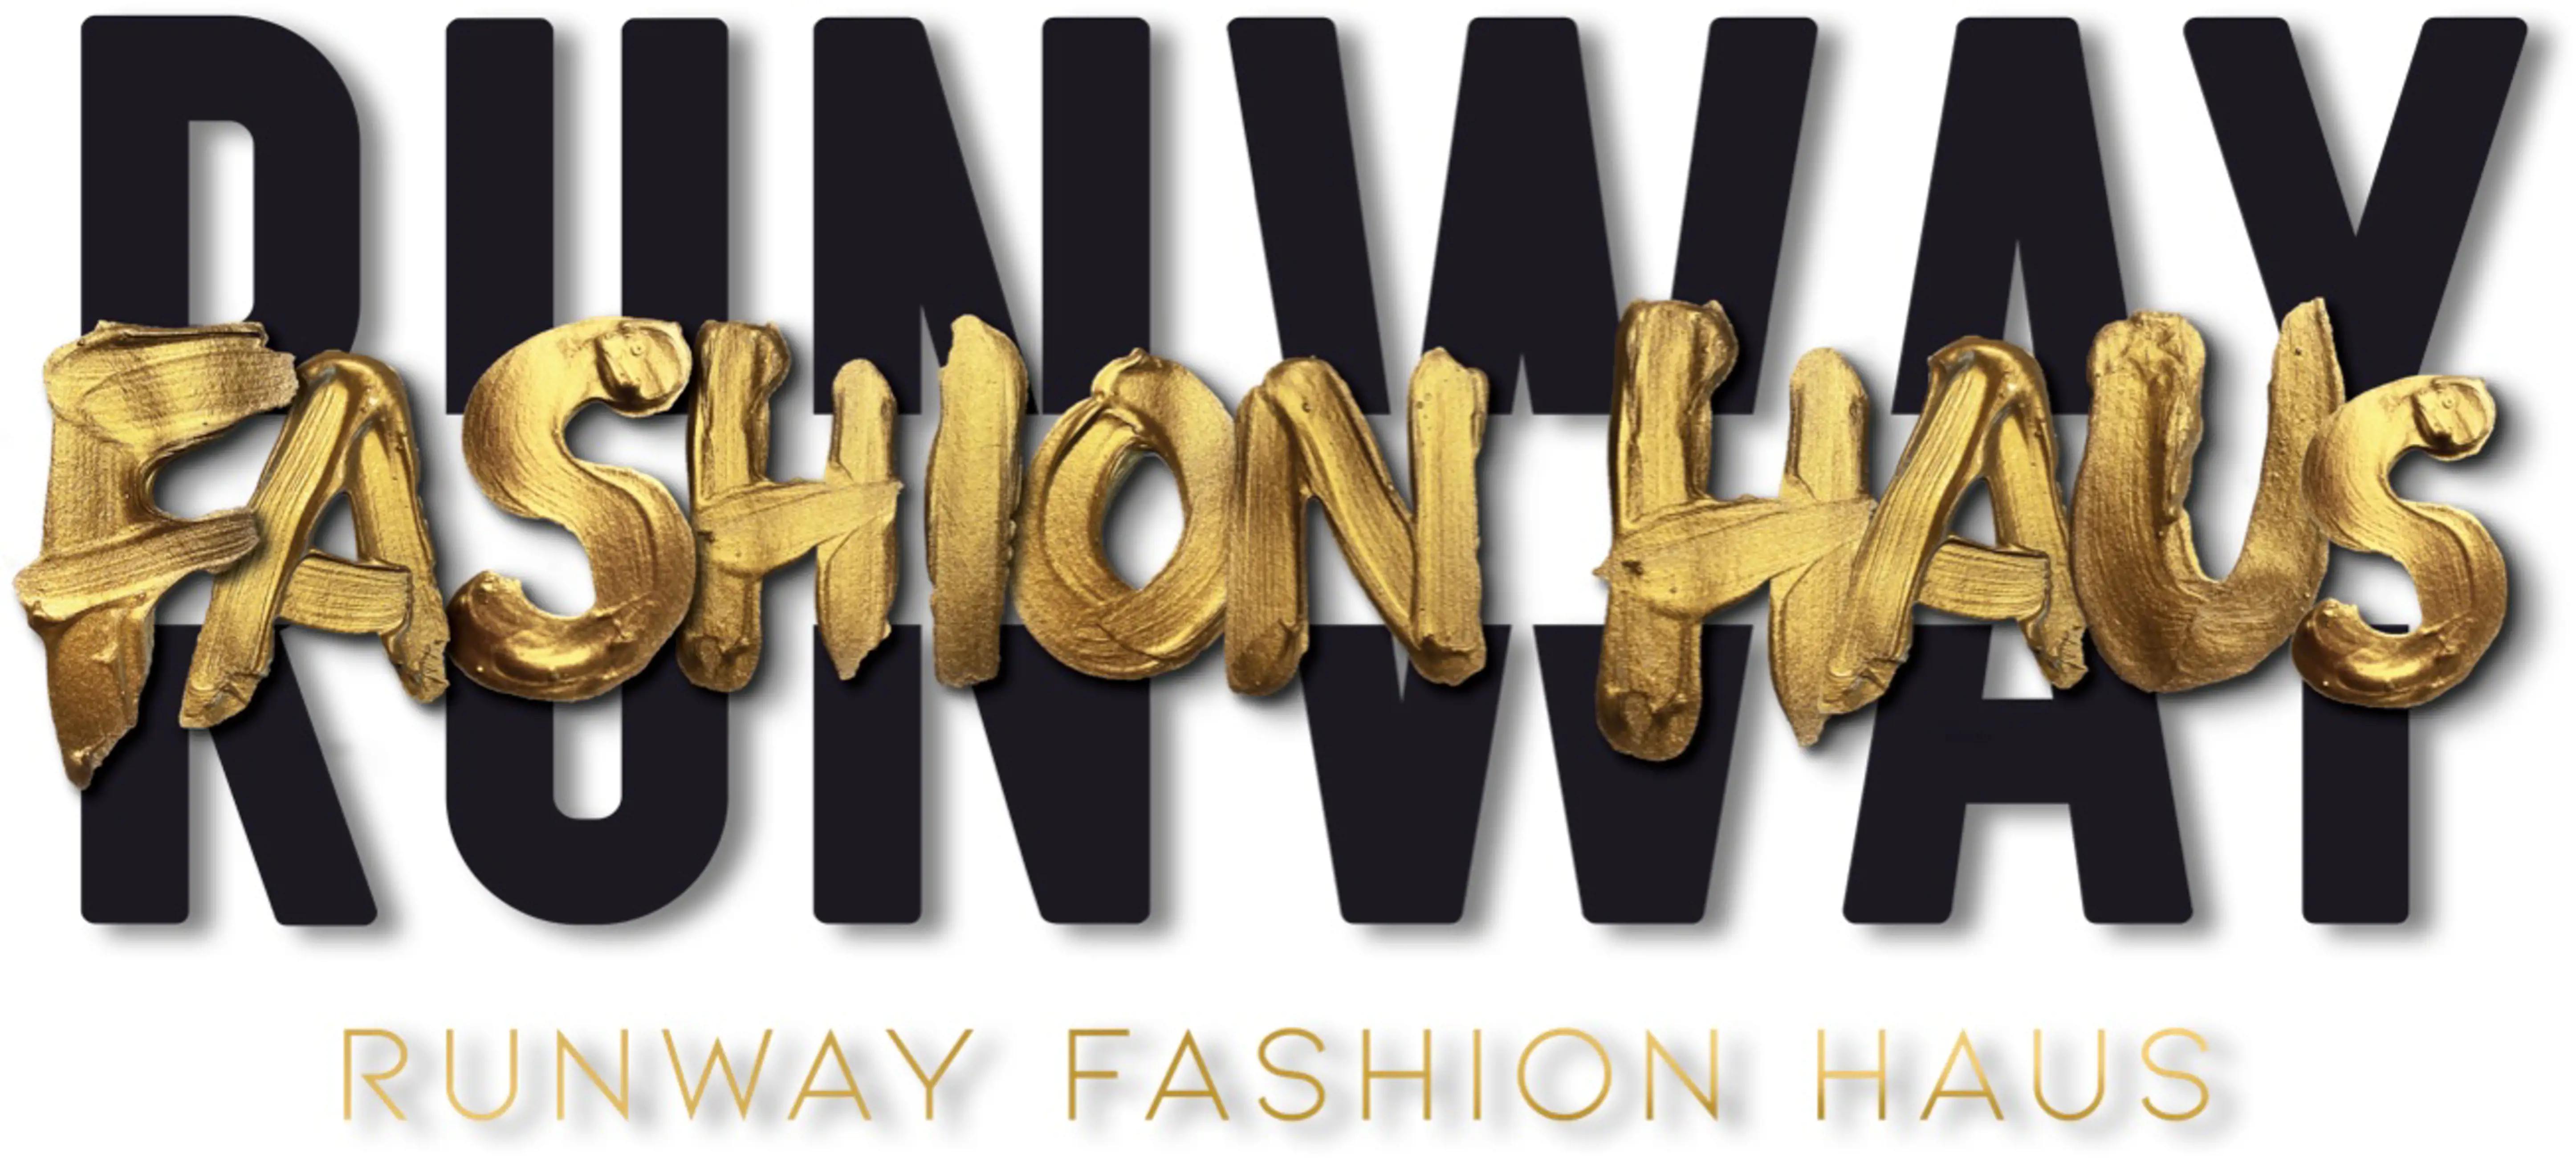 Runway Fashion Haus Logo